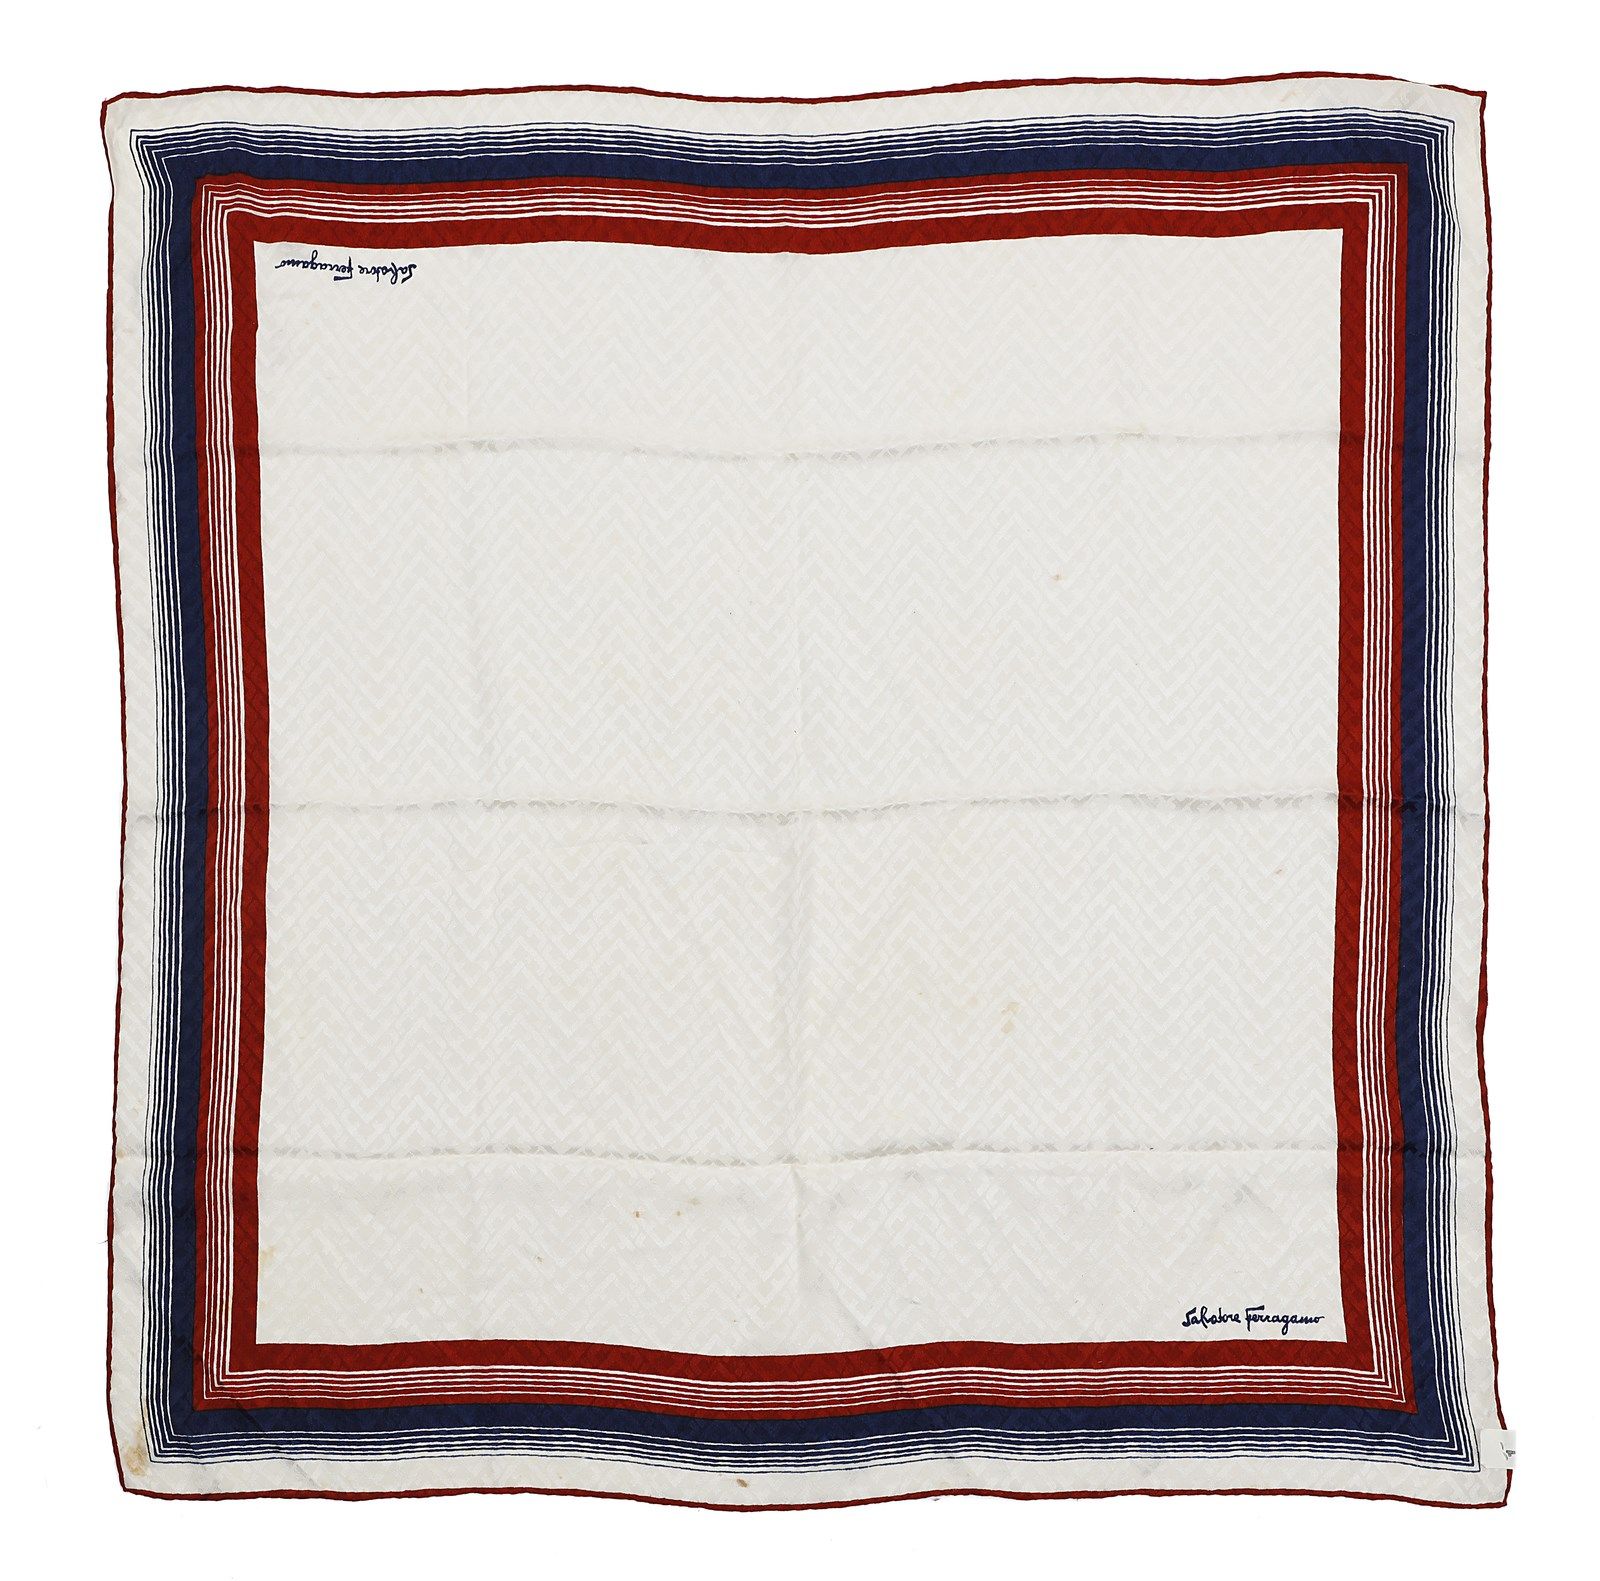 SALVATORE FERRAGAMO Multicolored foulard (cream, blue and red) in silk. Foulard &hellip;